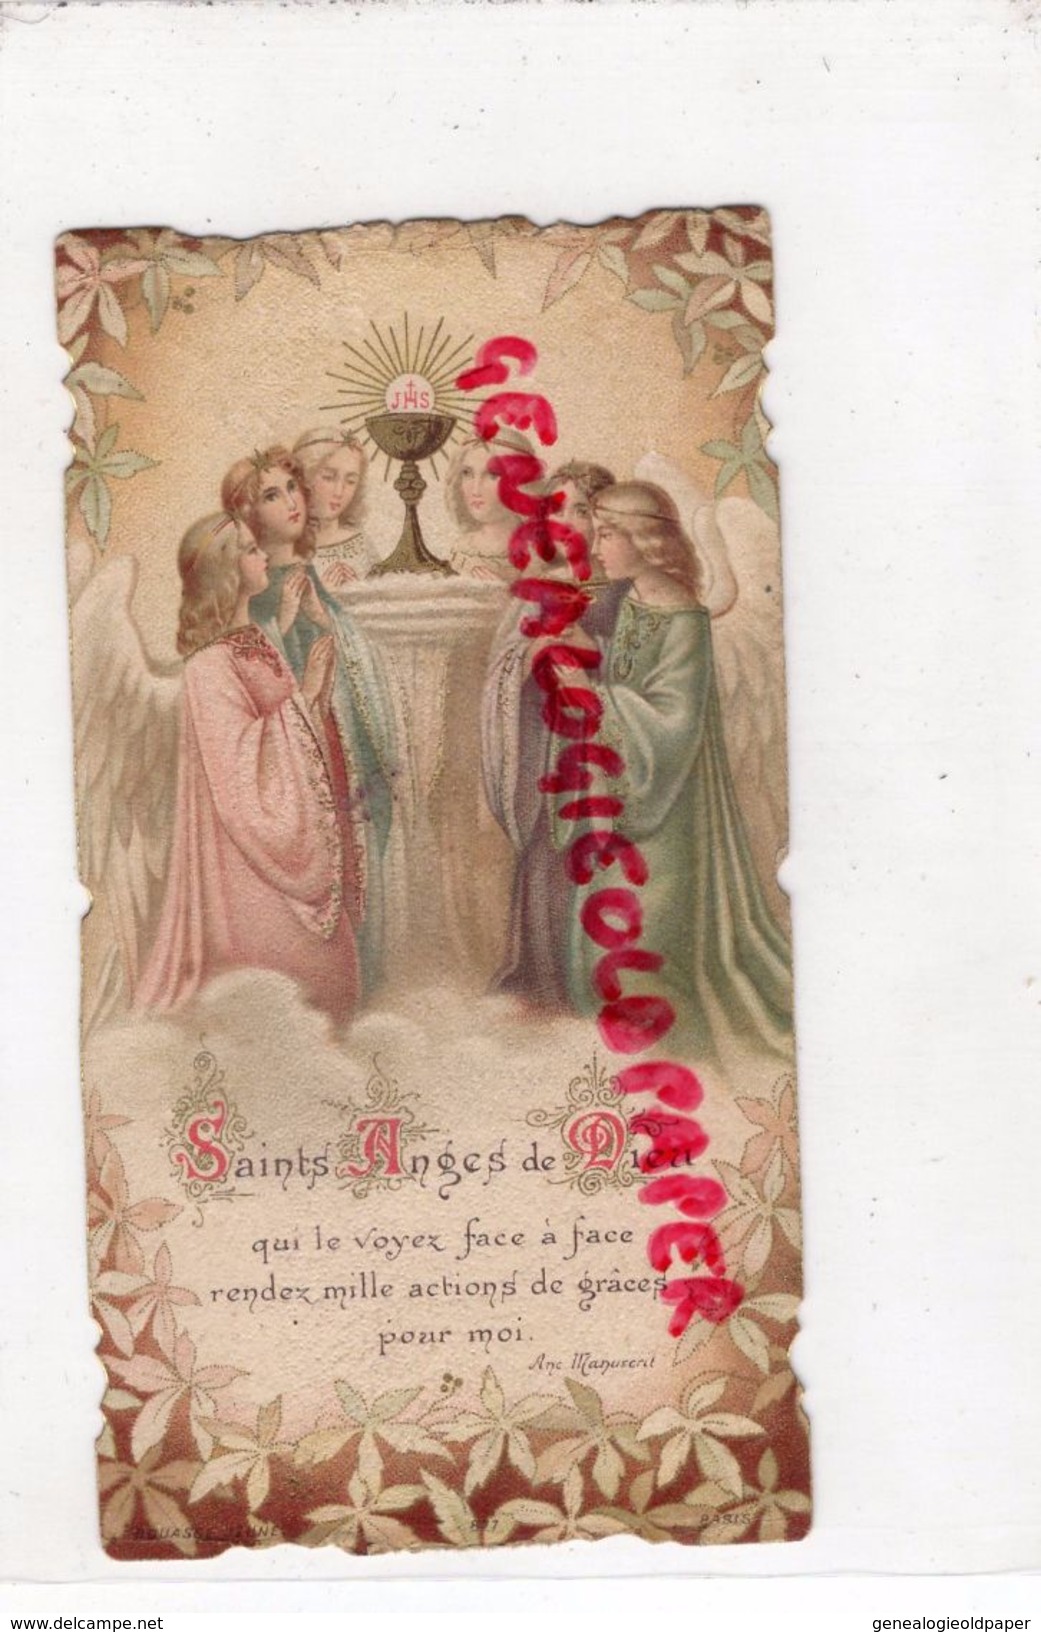 87 - LIMOGES- CHAPELLE ECOLE ST SAINT MARTIAL- SOUVENIR 1 ERE COMMUNION 8 JUIN 1902-ROBERT LAROUDIE- JEANNE D' ARC -ANGE - Images Religieuses